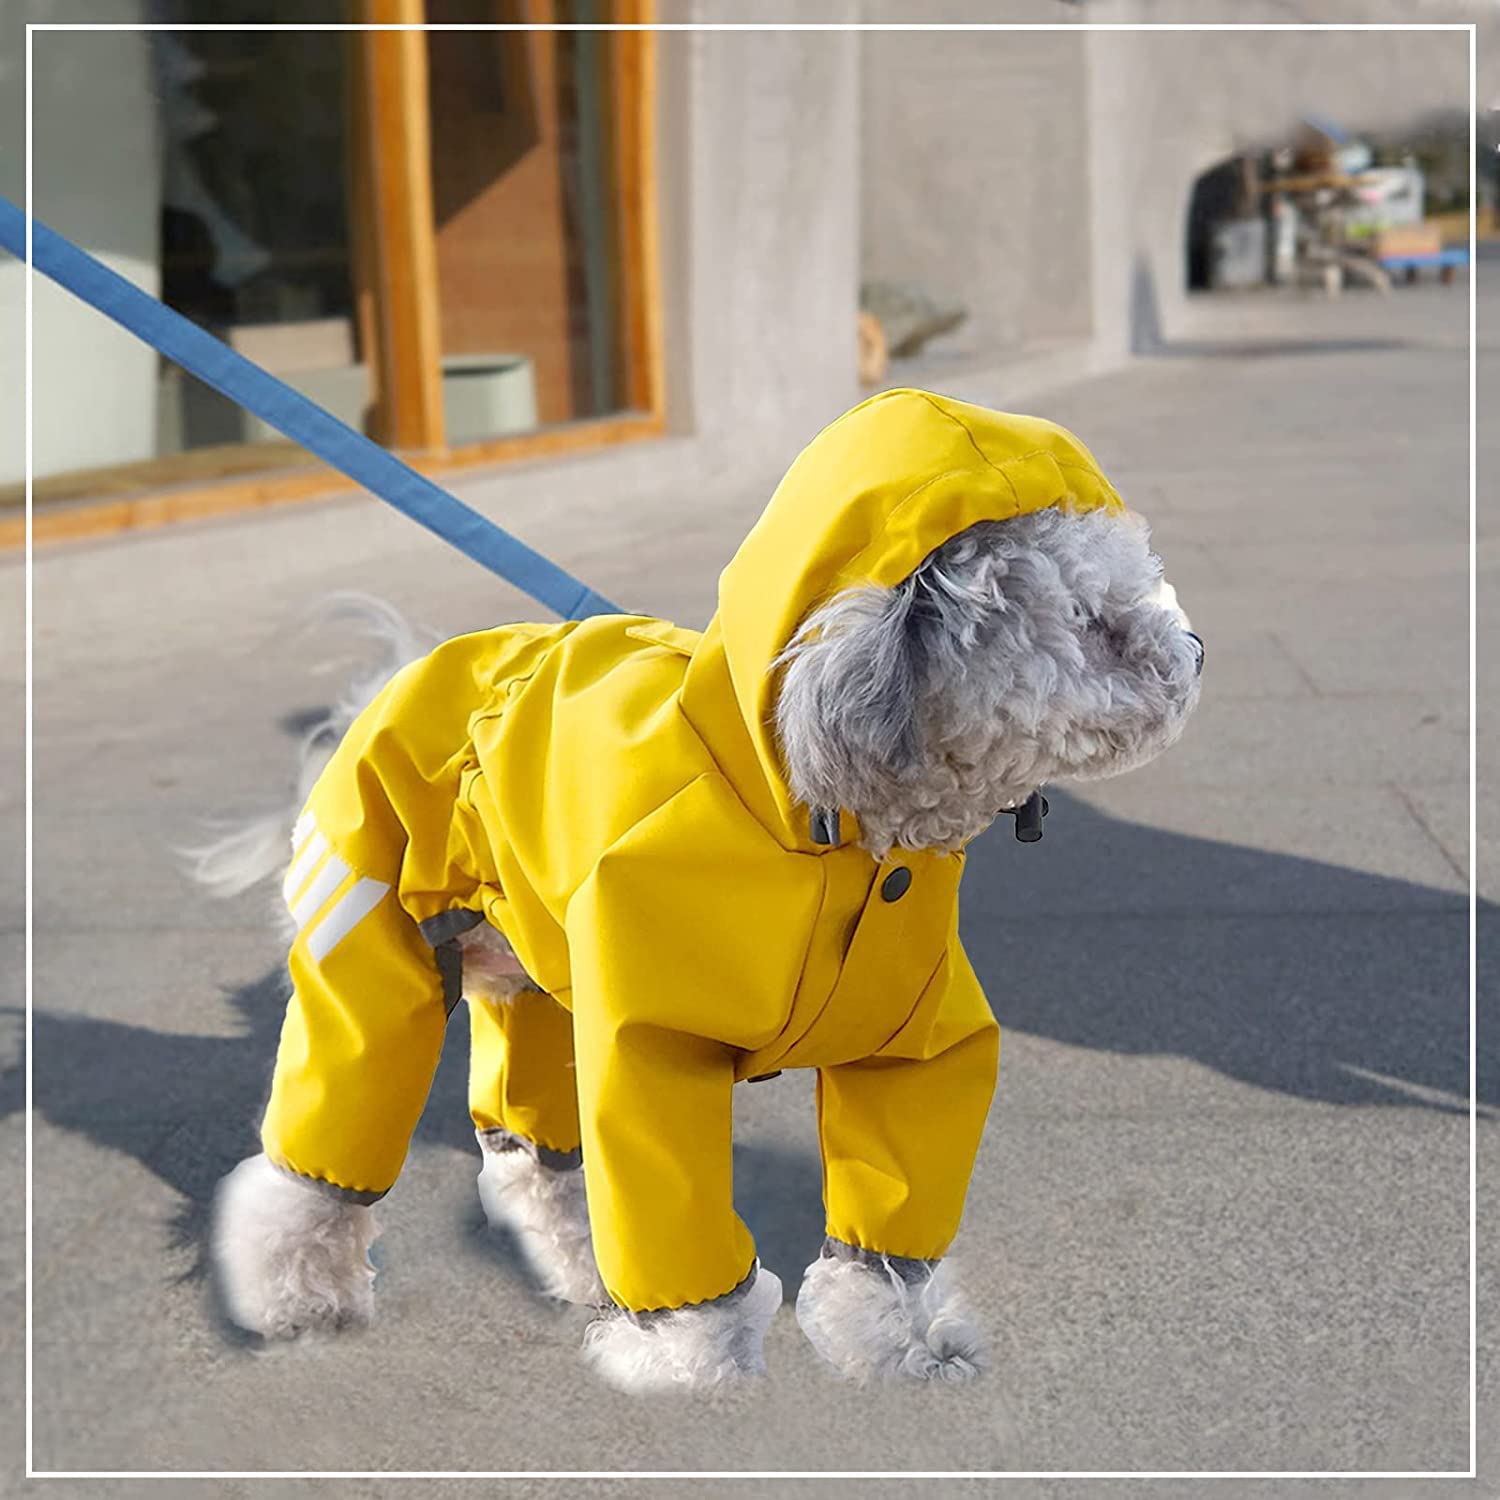  این نه تنها یک بارانی سگ است، بلکه یک مد سگ نیز هست. رنگ زرد روشن مانند آفتاب است و طراحی گوش خرسی زیباتر است. 